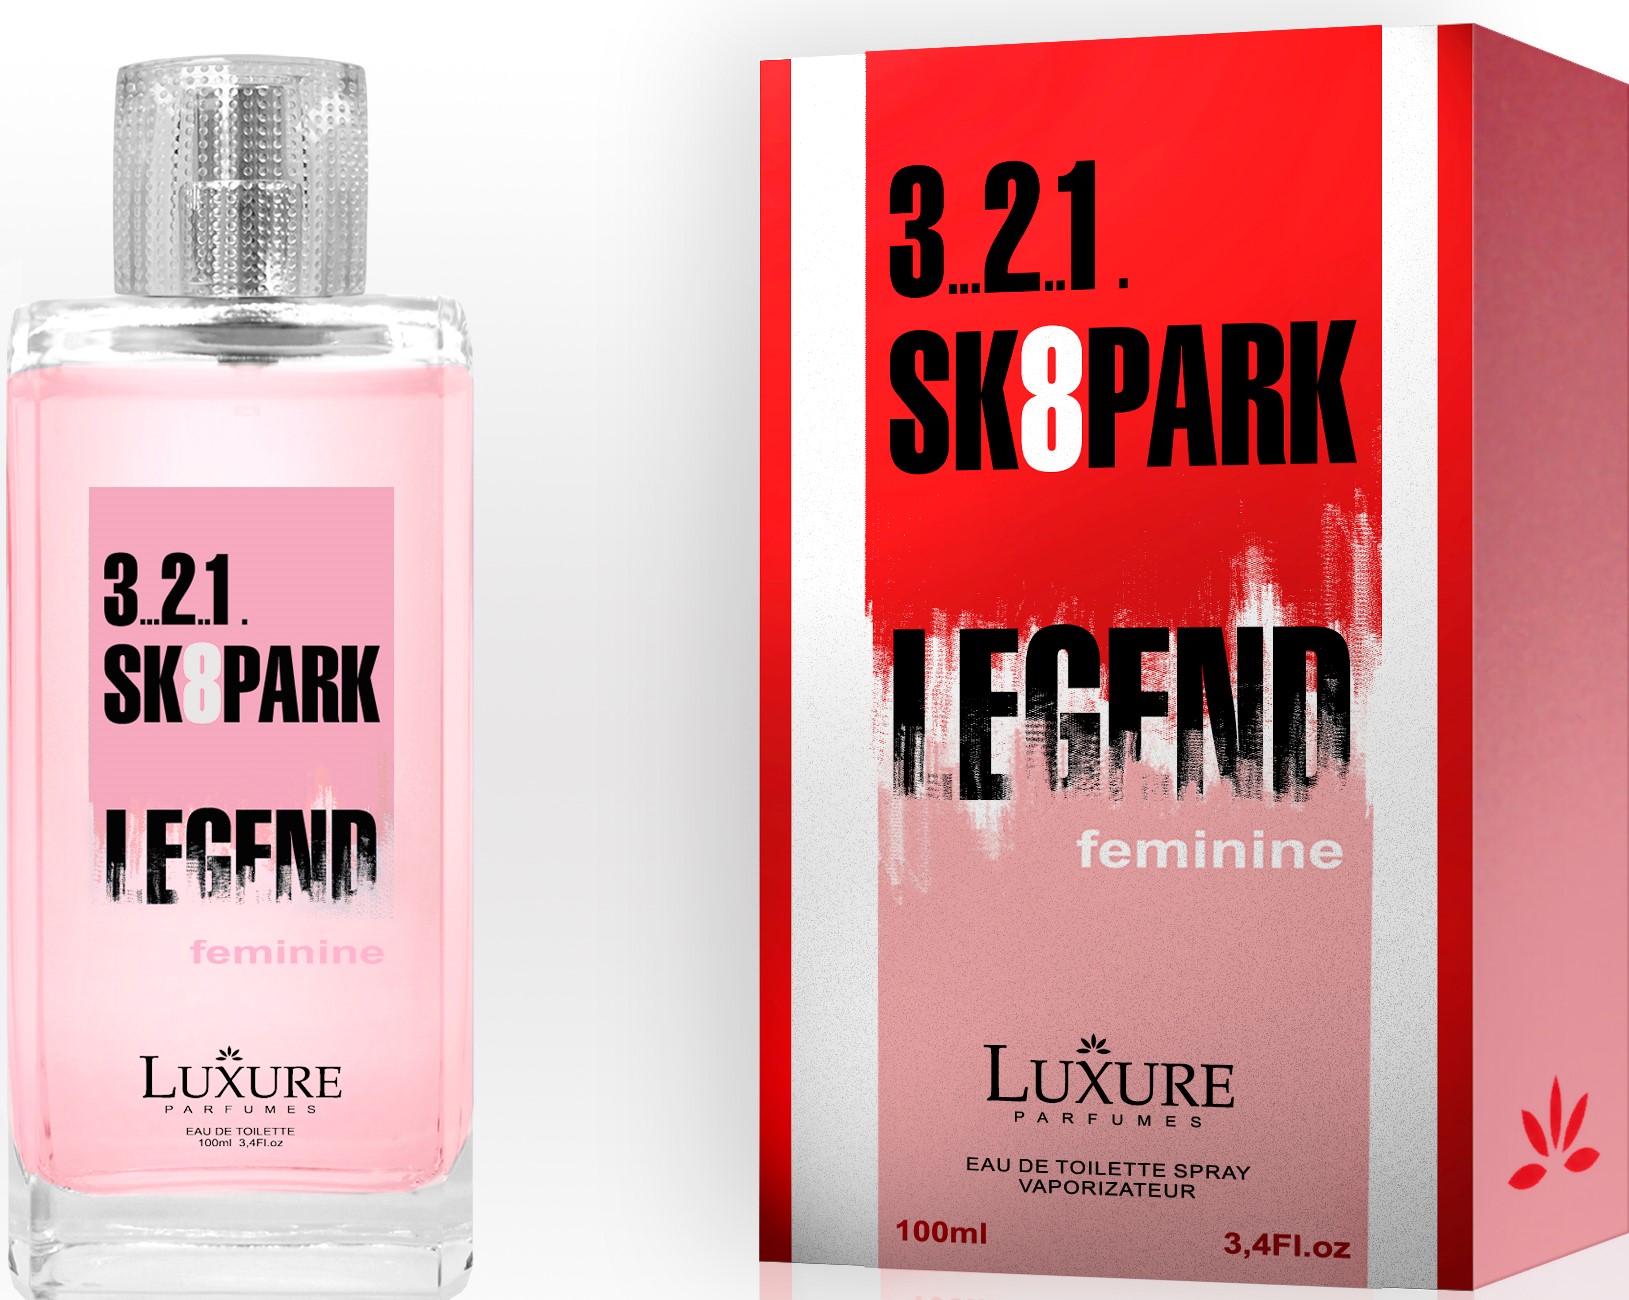 Luxure SK8PARK LEGEND FEMINIME parfémovaná voda pro ženy 100 ml